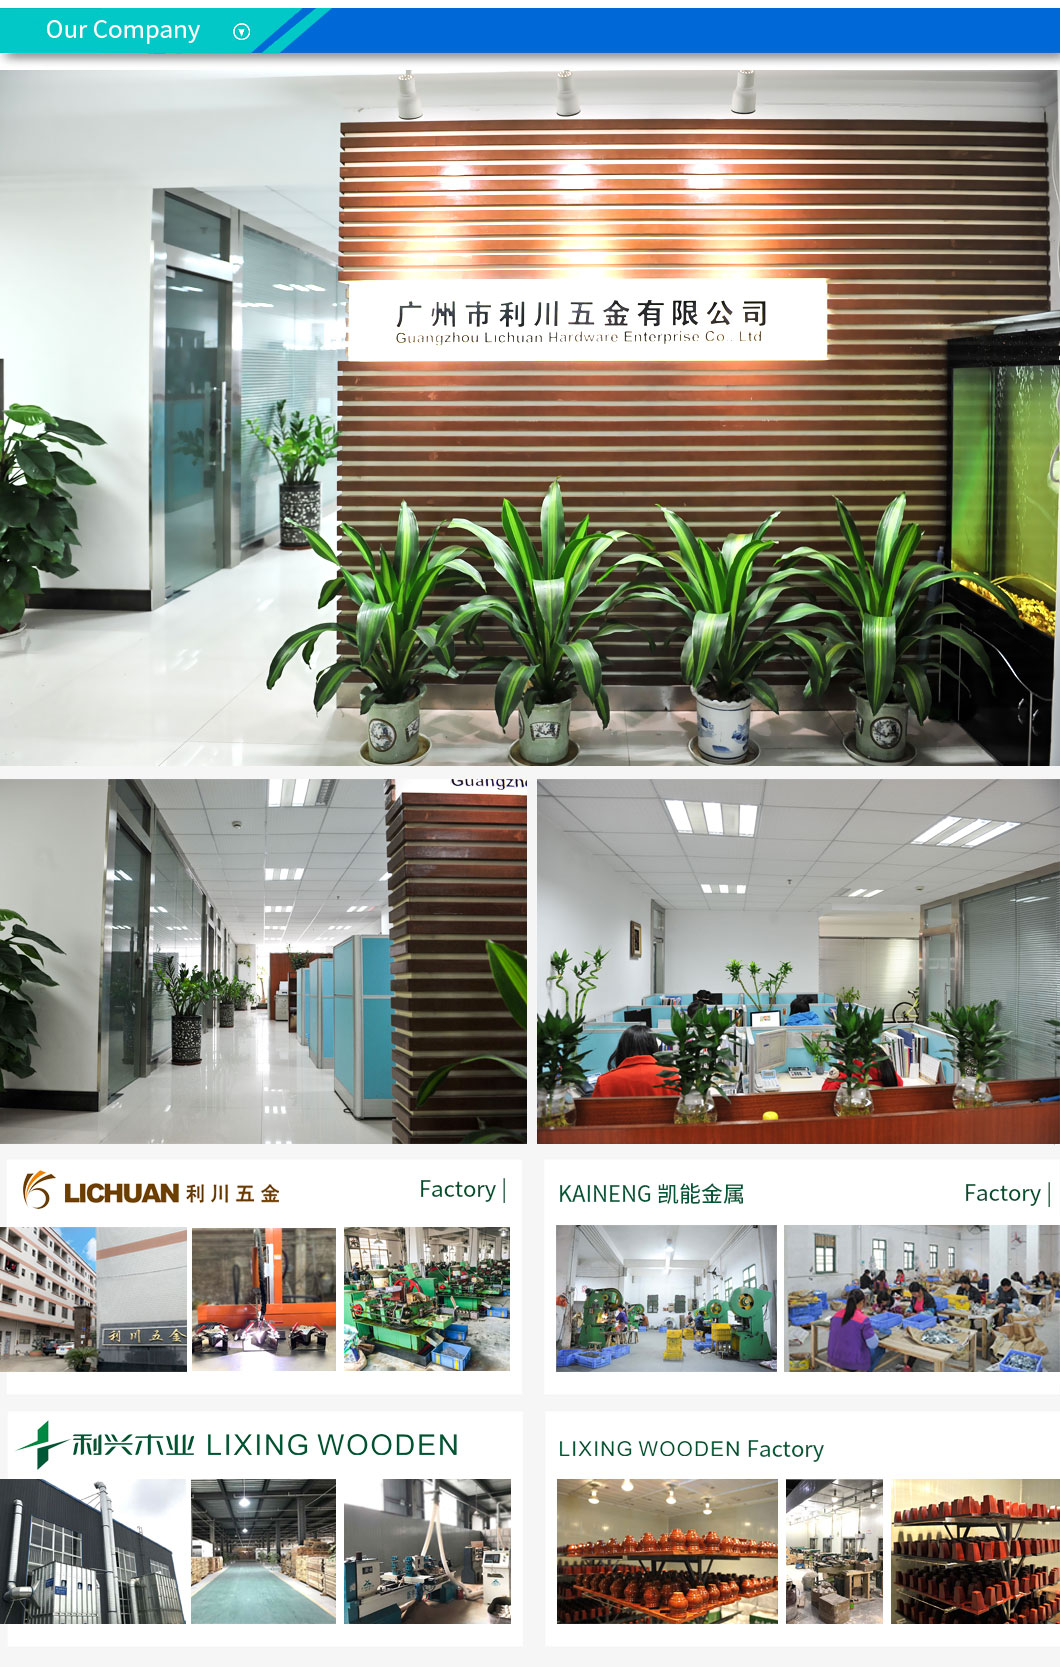 lichuan company